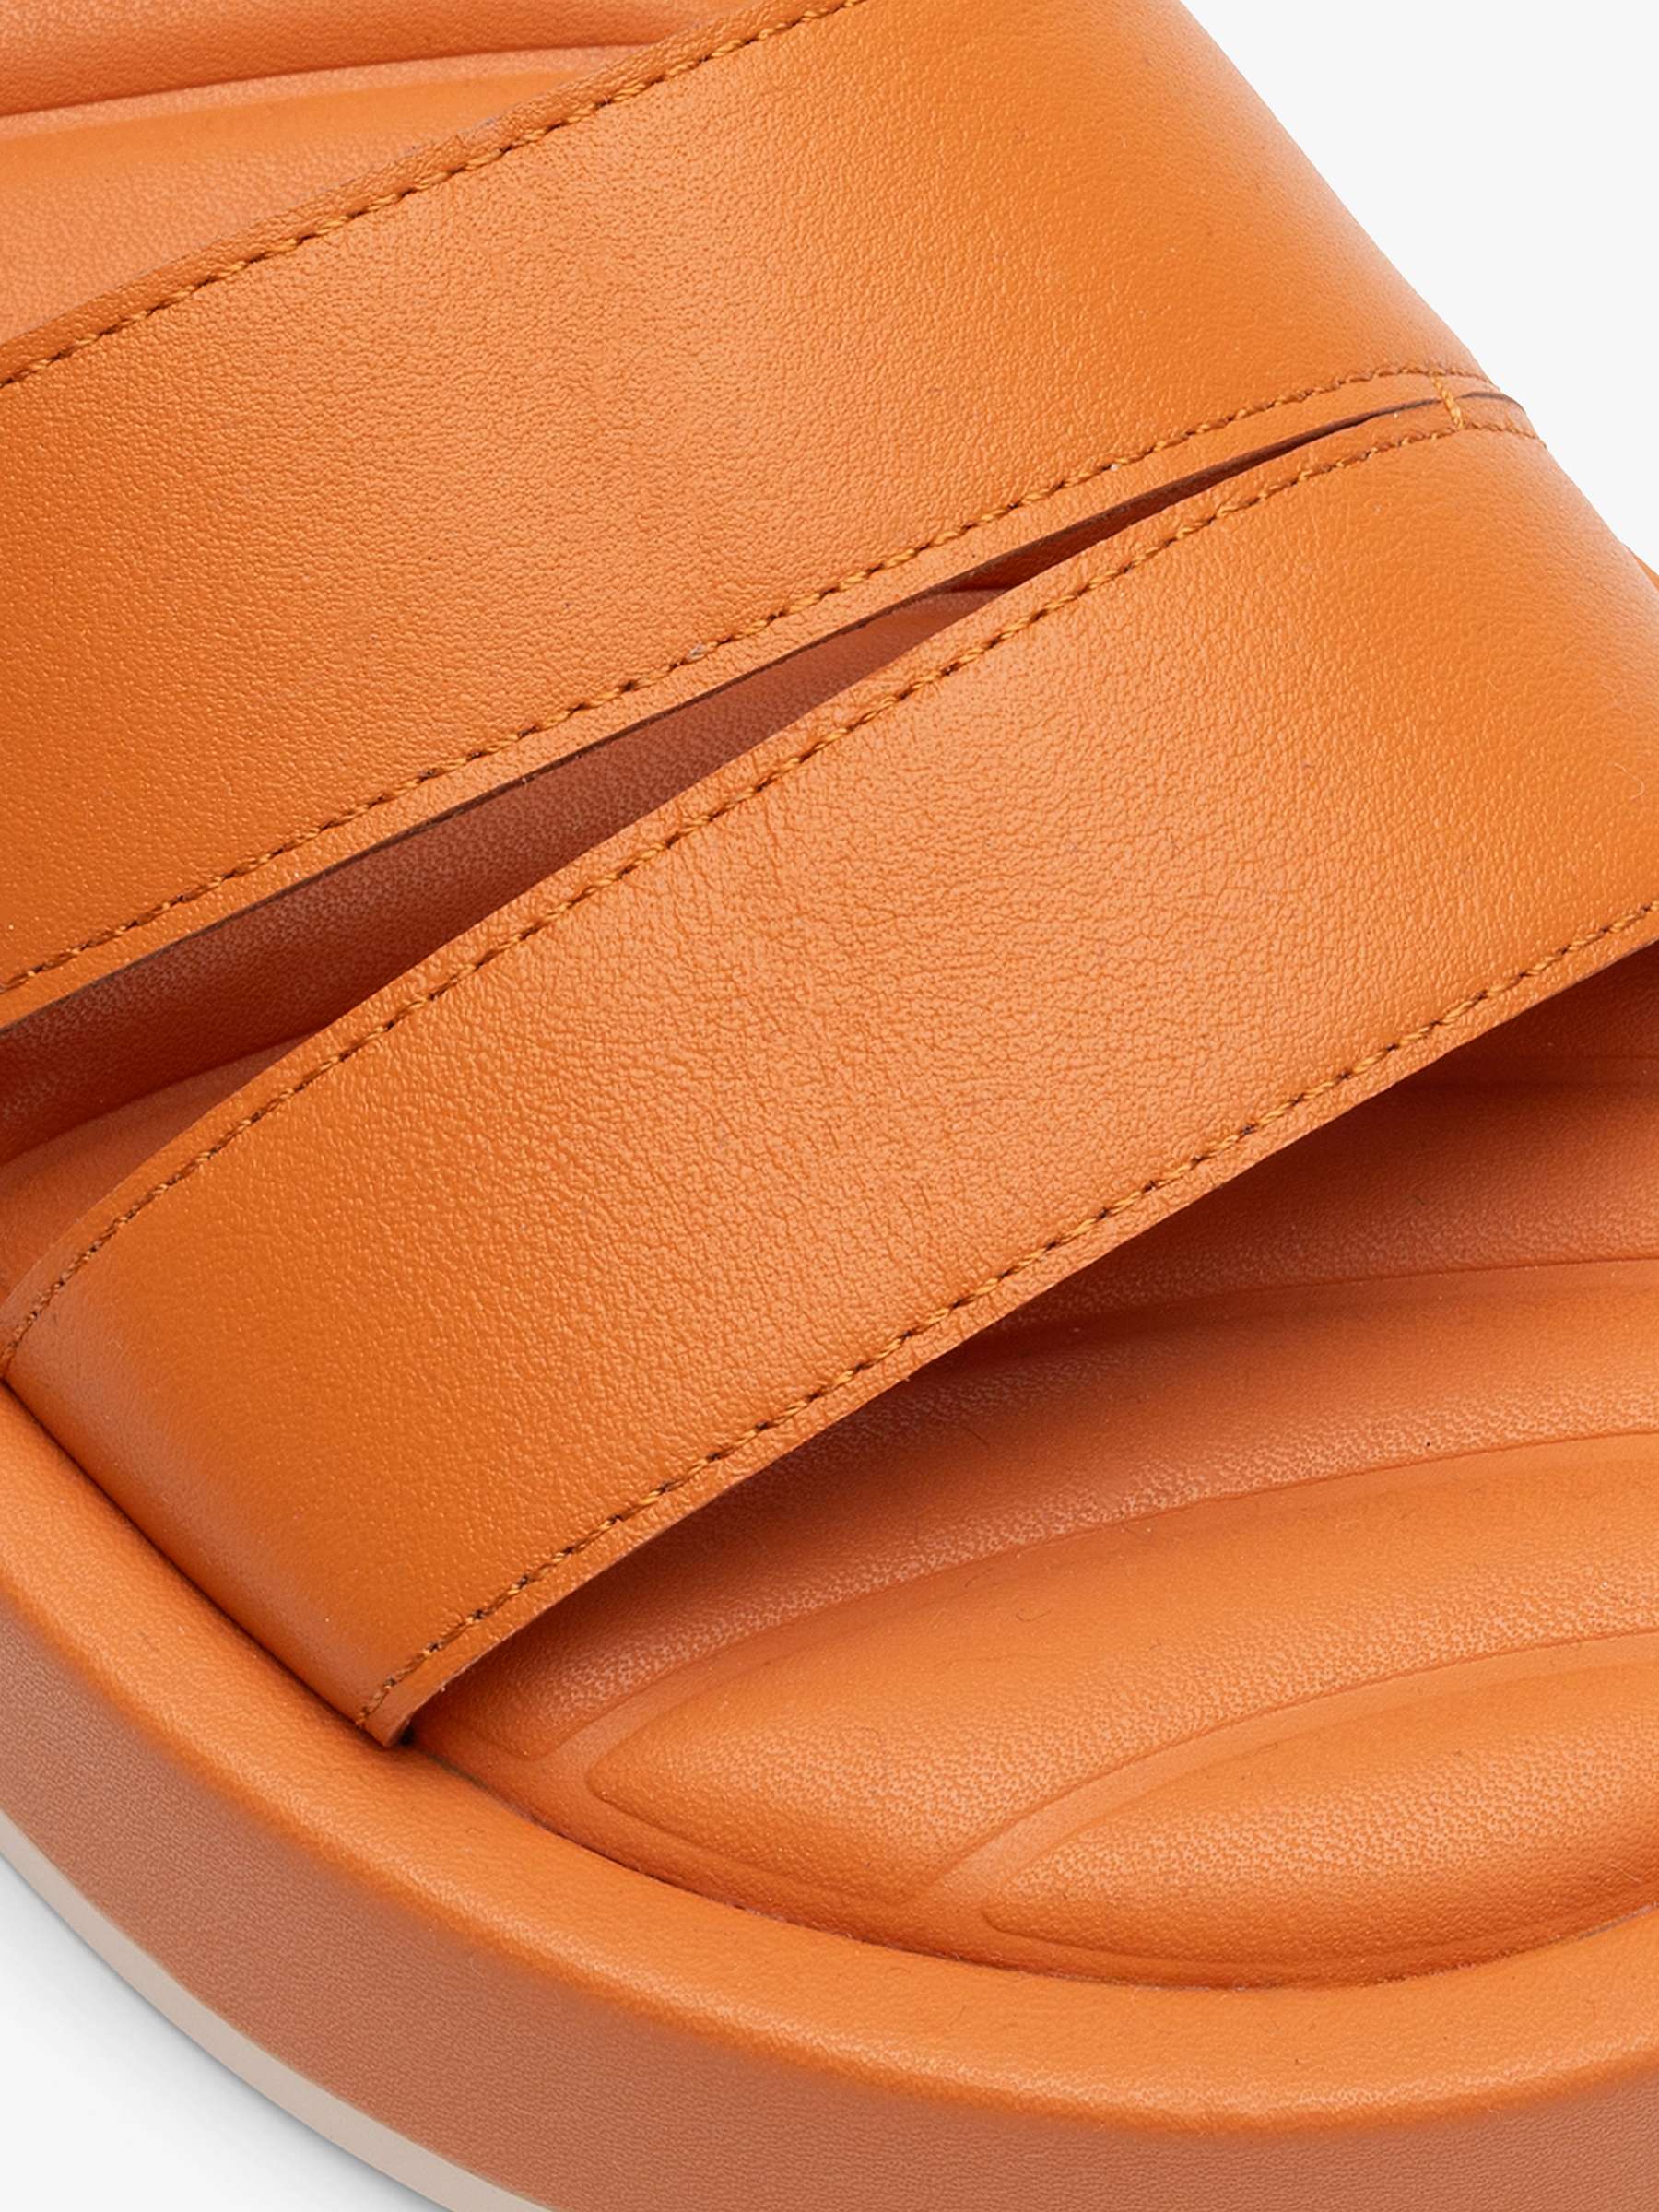 Buy HOFF Town Leather Flatform Sandals Online at johnlewis.com